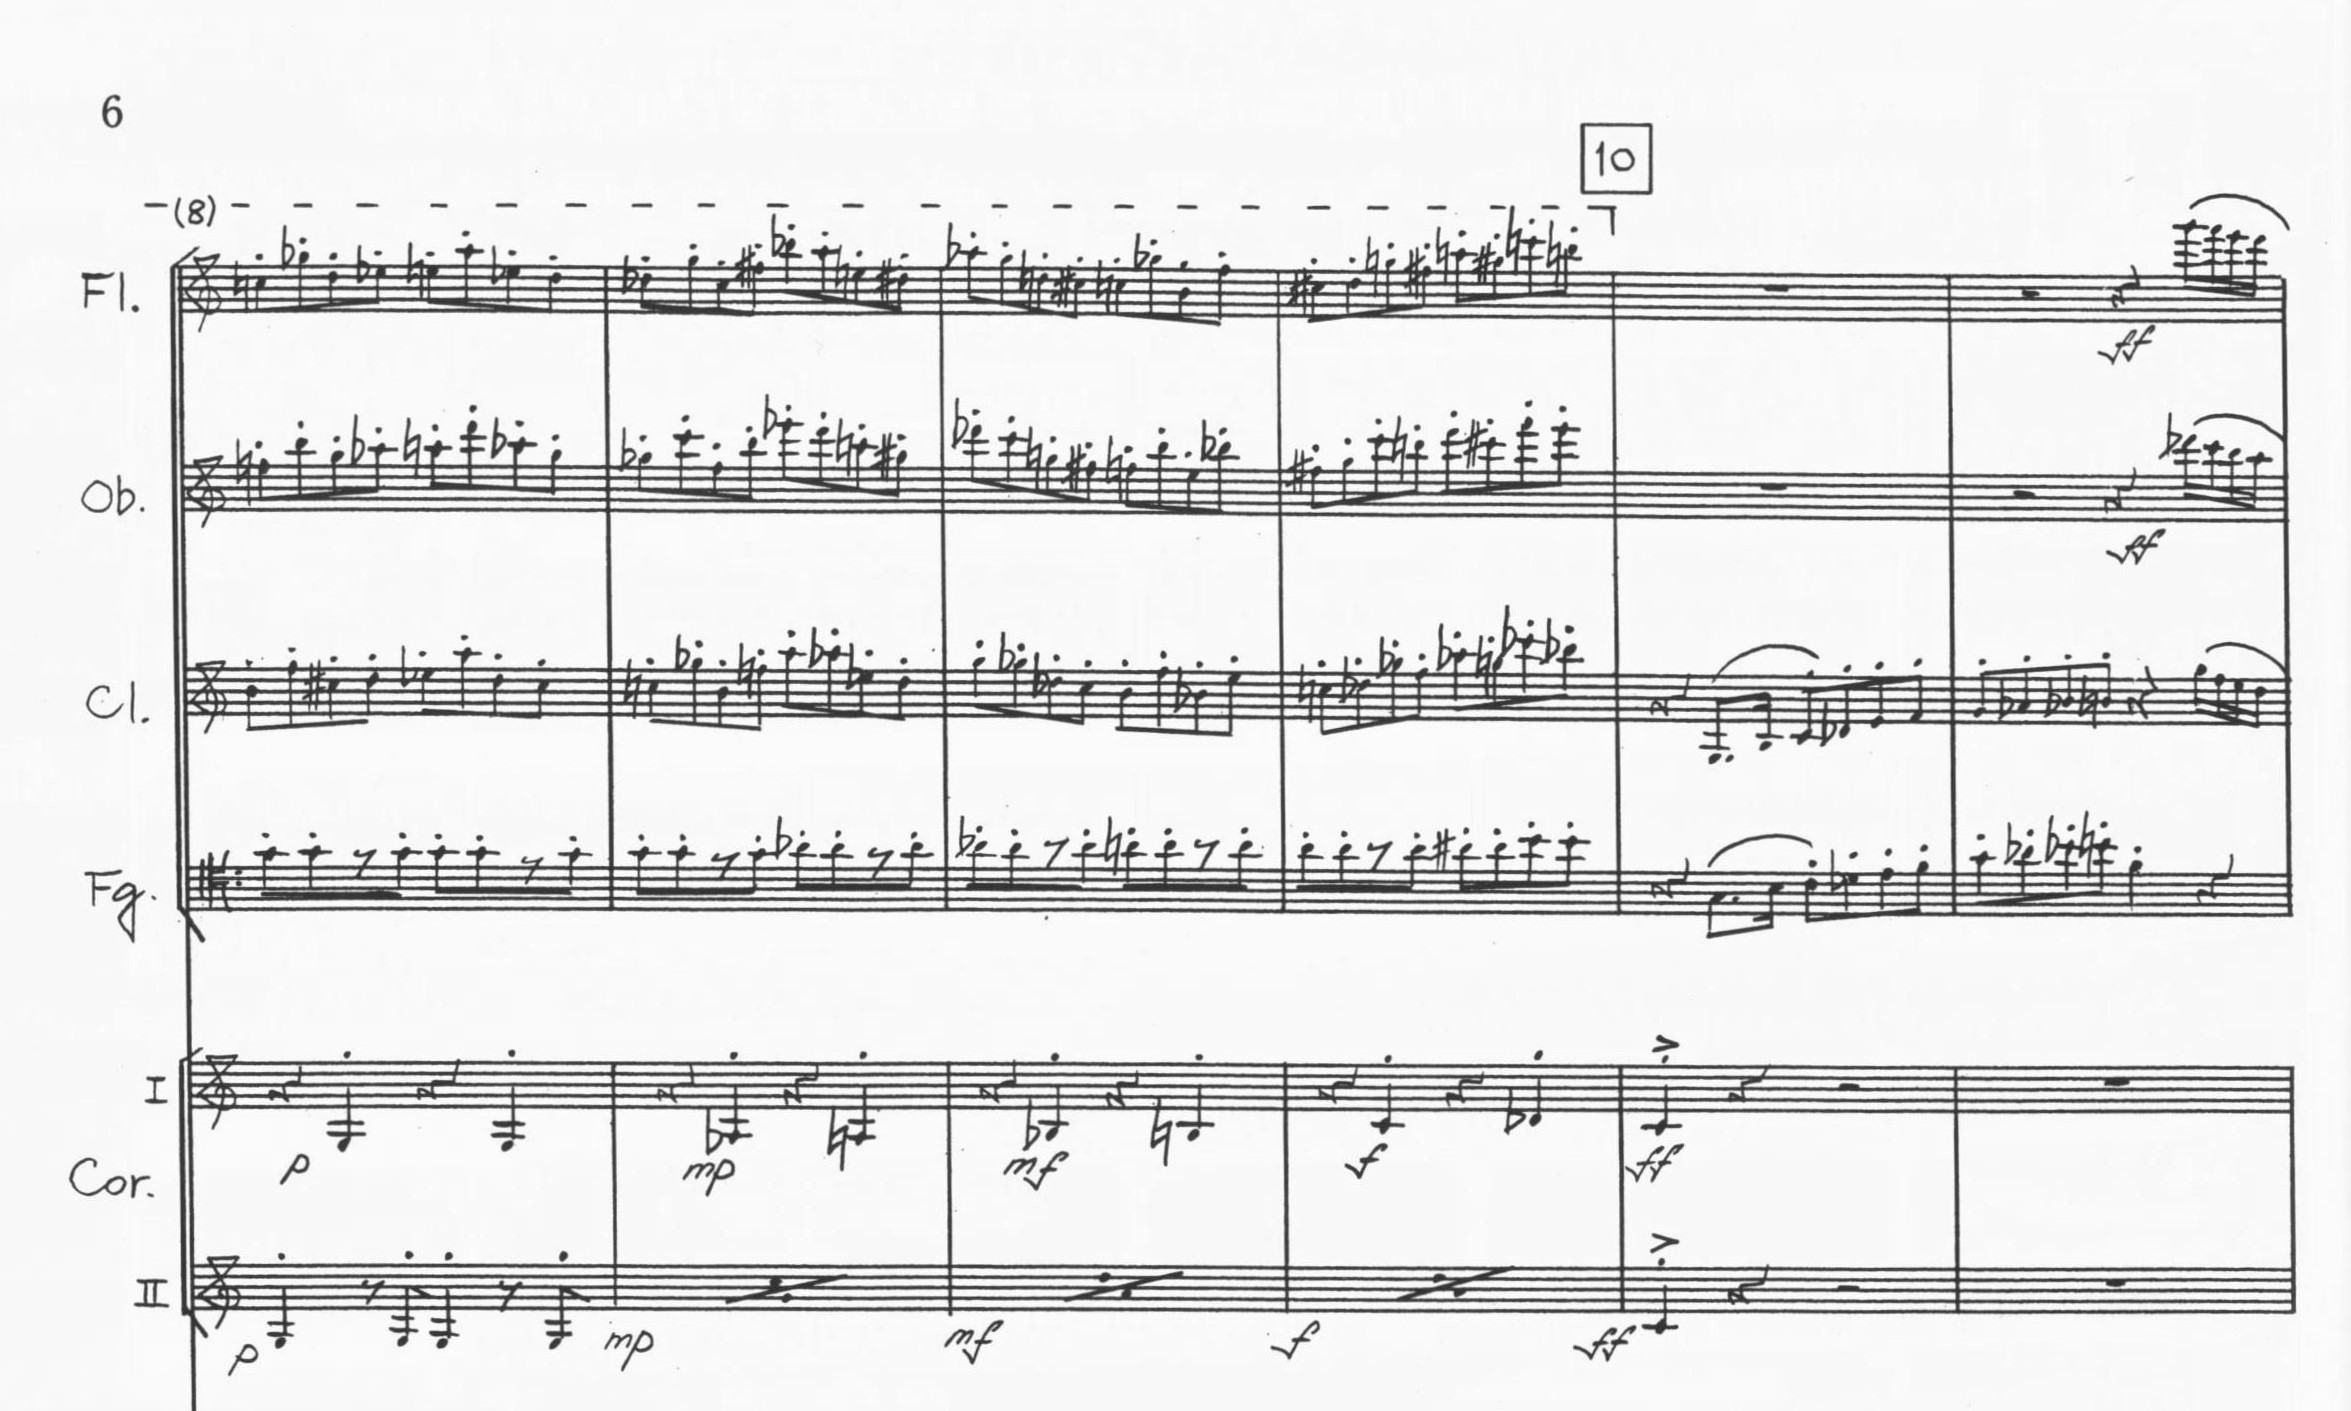 Sinfonietta on Beethoven's Eight Symphonies - Akira Nishimura